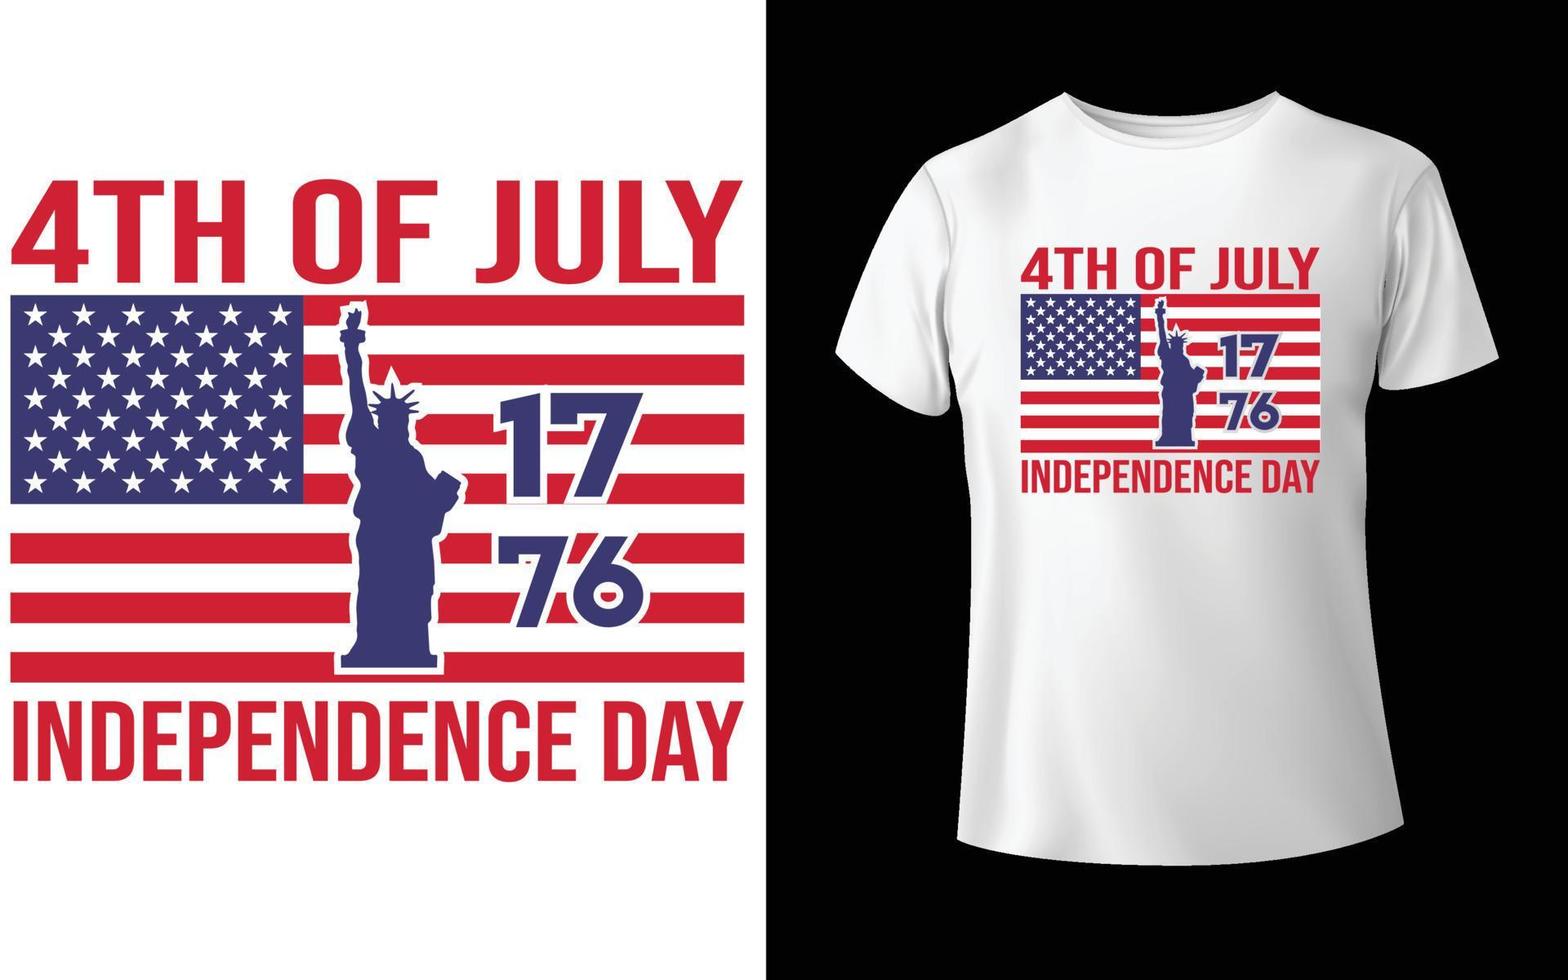 diseño de camisetas del día de la independencia del 4 de julio feliz, diseño de camisetas del día de la independencia del 4 de julio, diseño de camisetas del día de la independencia del 4 de julio de 1776, vector